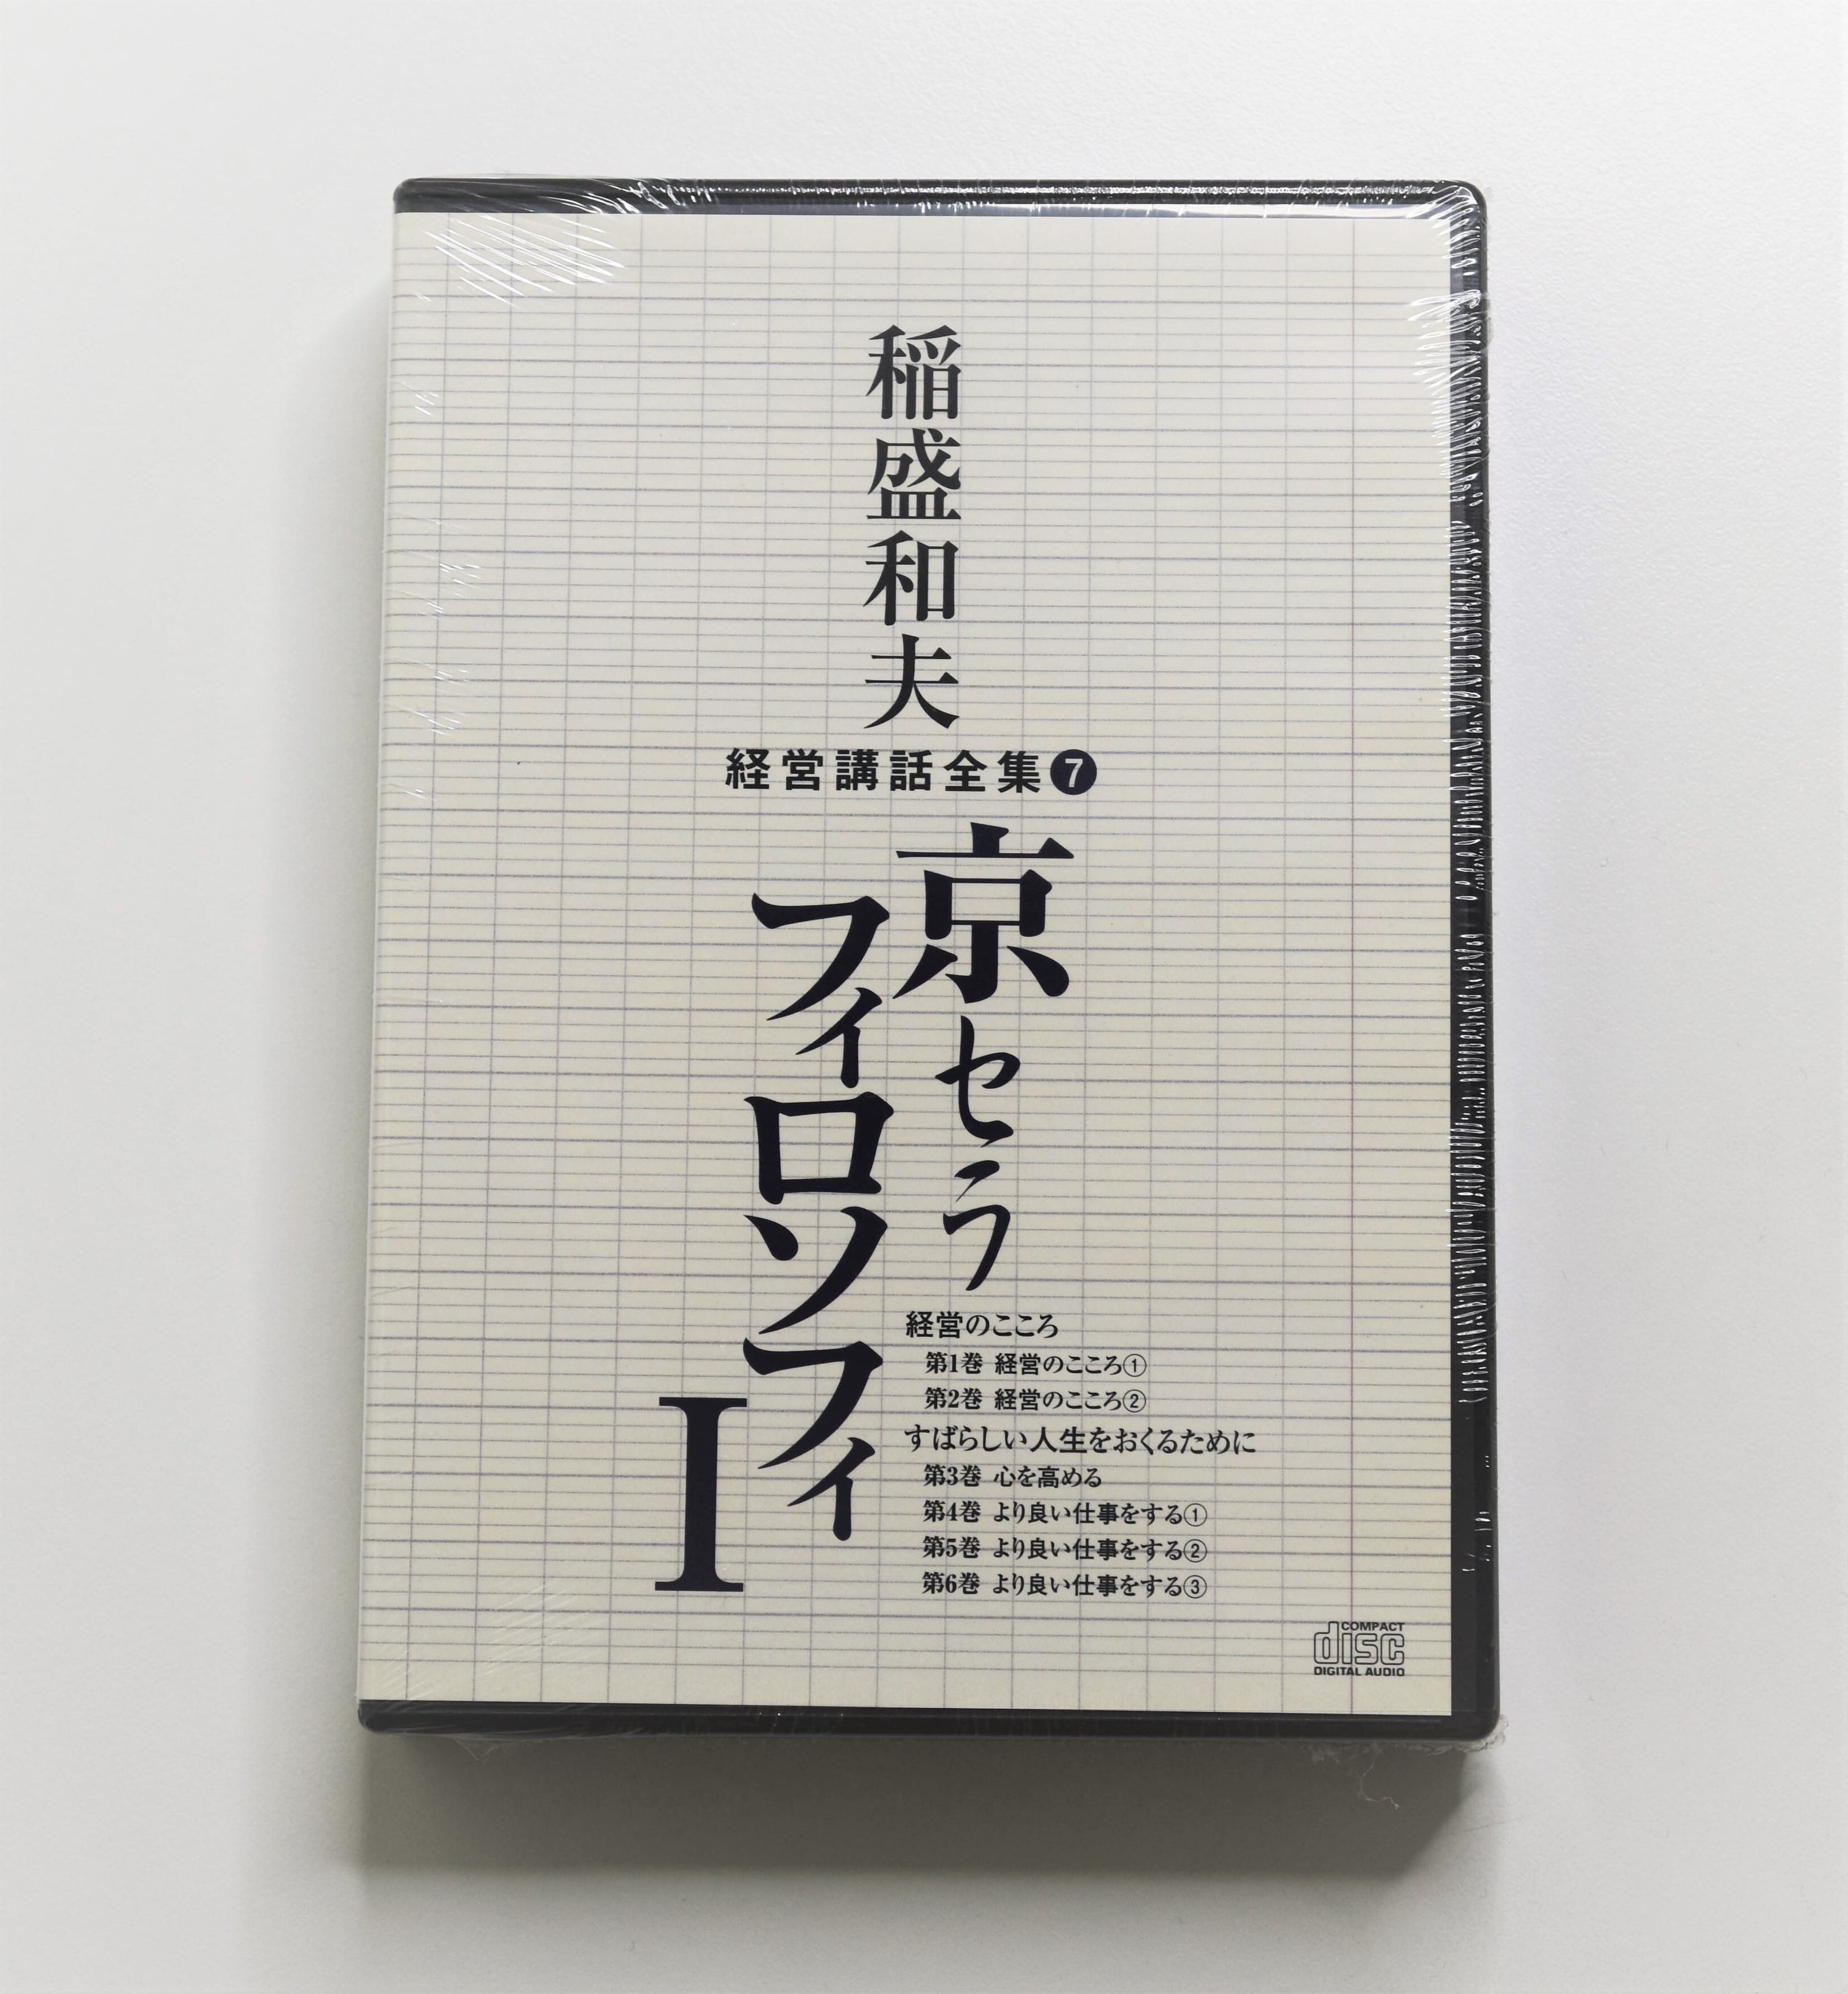 稲盛和夫 経営講話全集8 京セラフィロソフィⅡ - CD